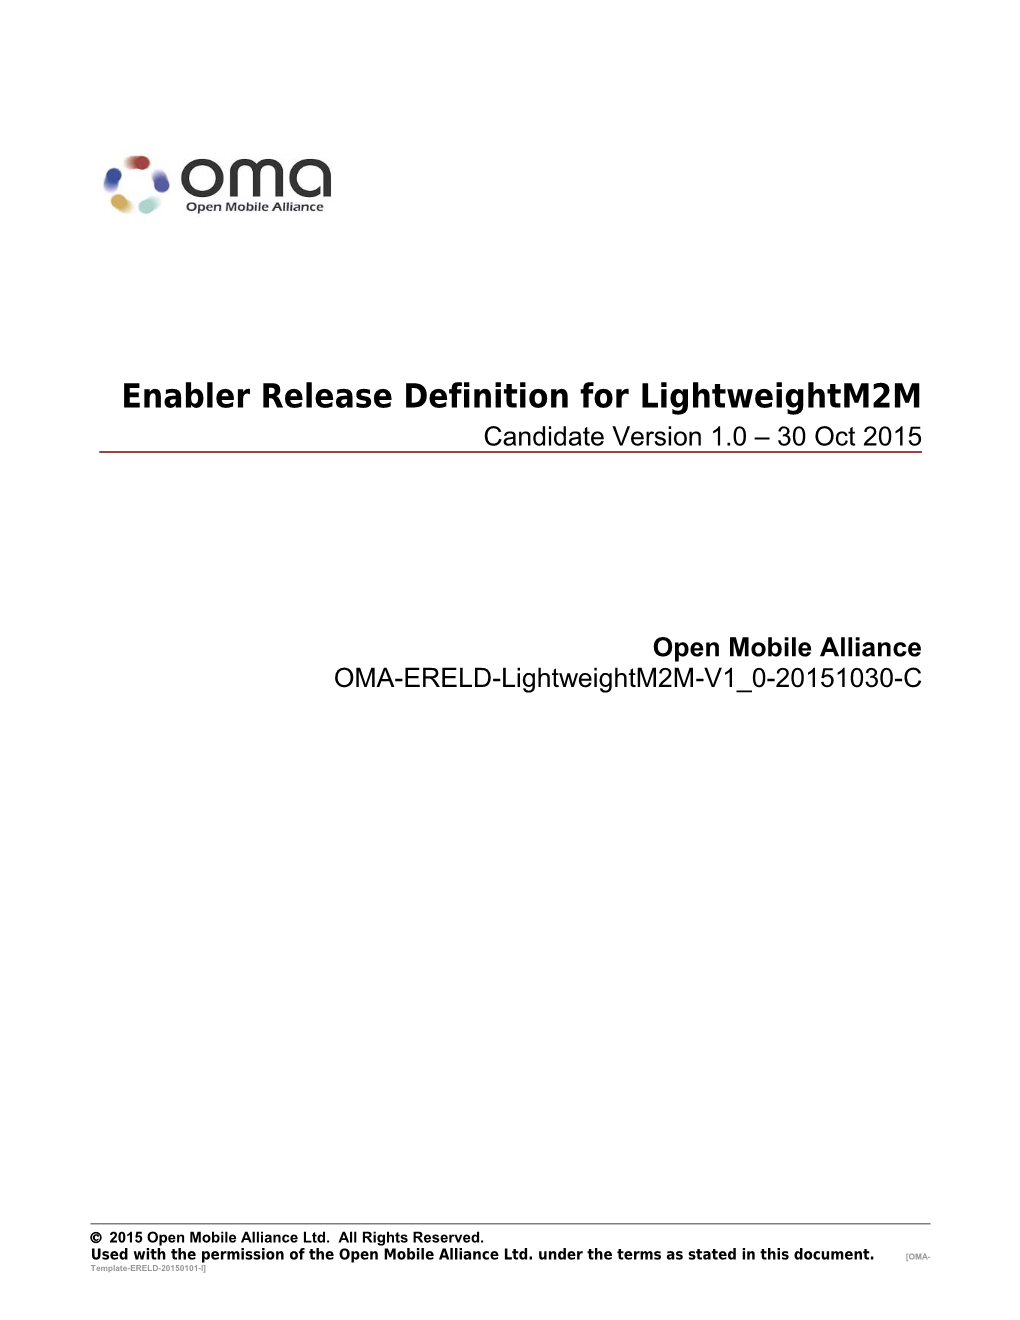 OMA-ERELD-Lightweightm2m-V1 0-20151030-C Page 3 V(15)